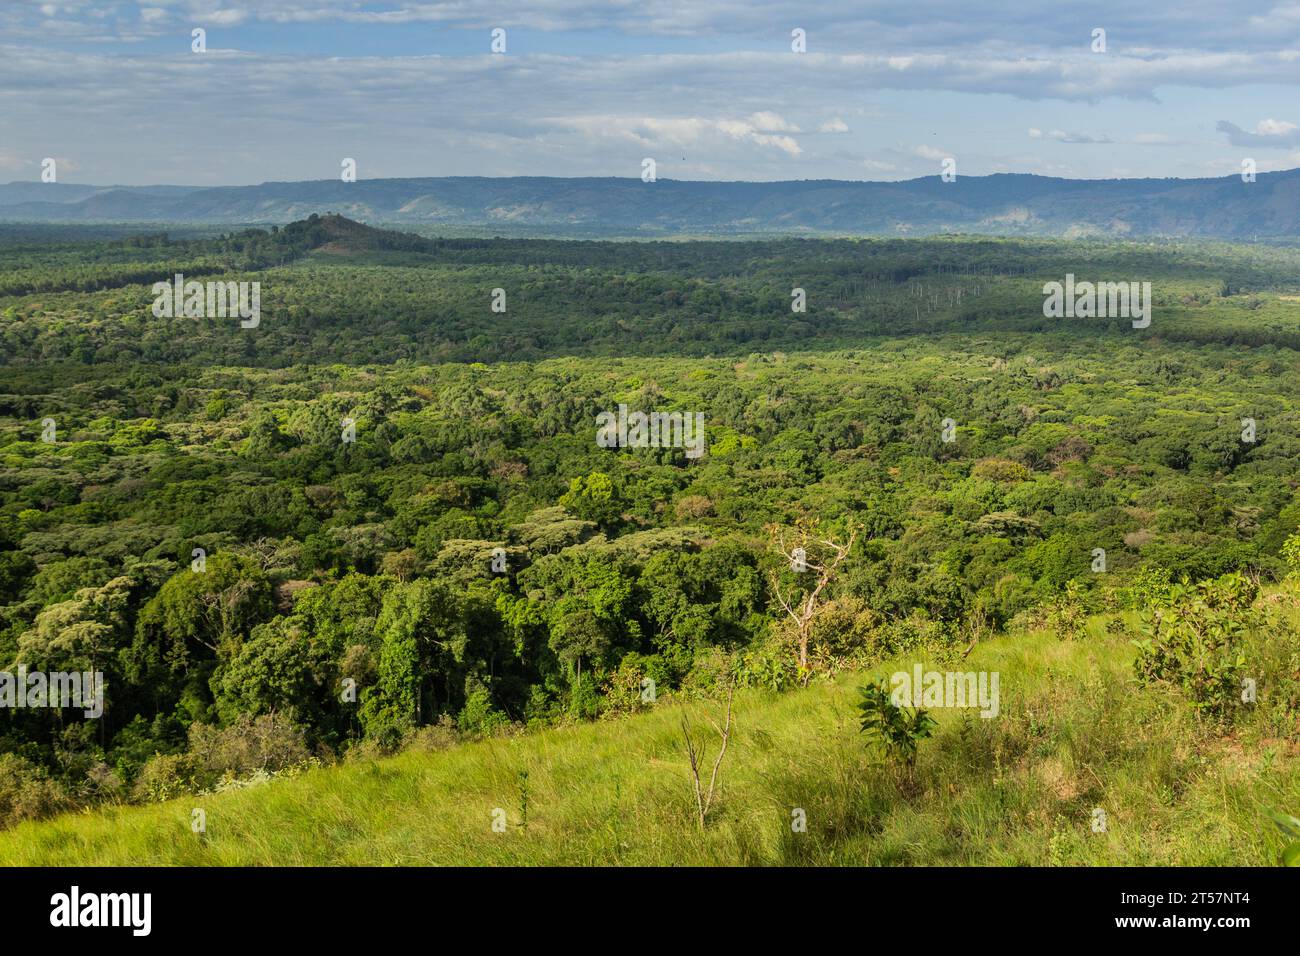 Vue aérienne de la Réserve forestière de Kakamega, Kenya Banque D'Images